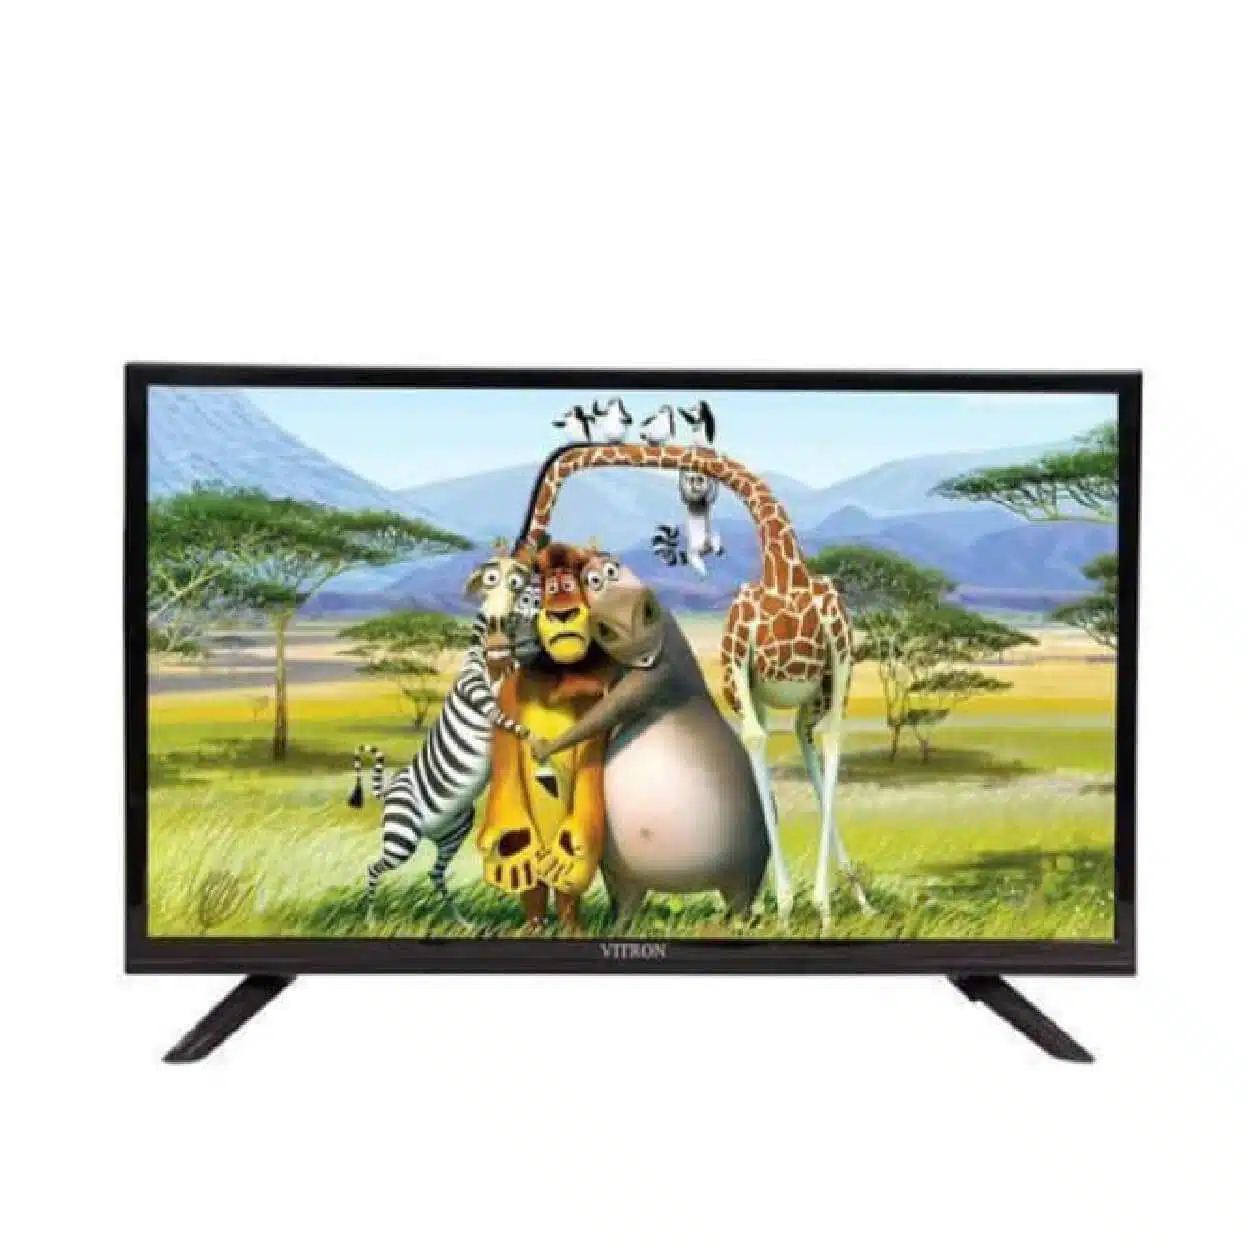 Vitron 32 inch TV Best Price in Kenya